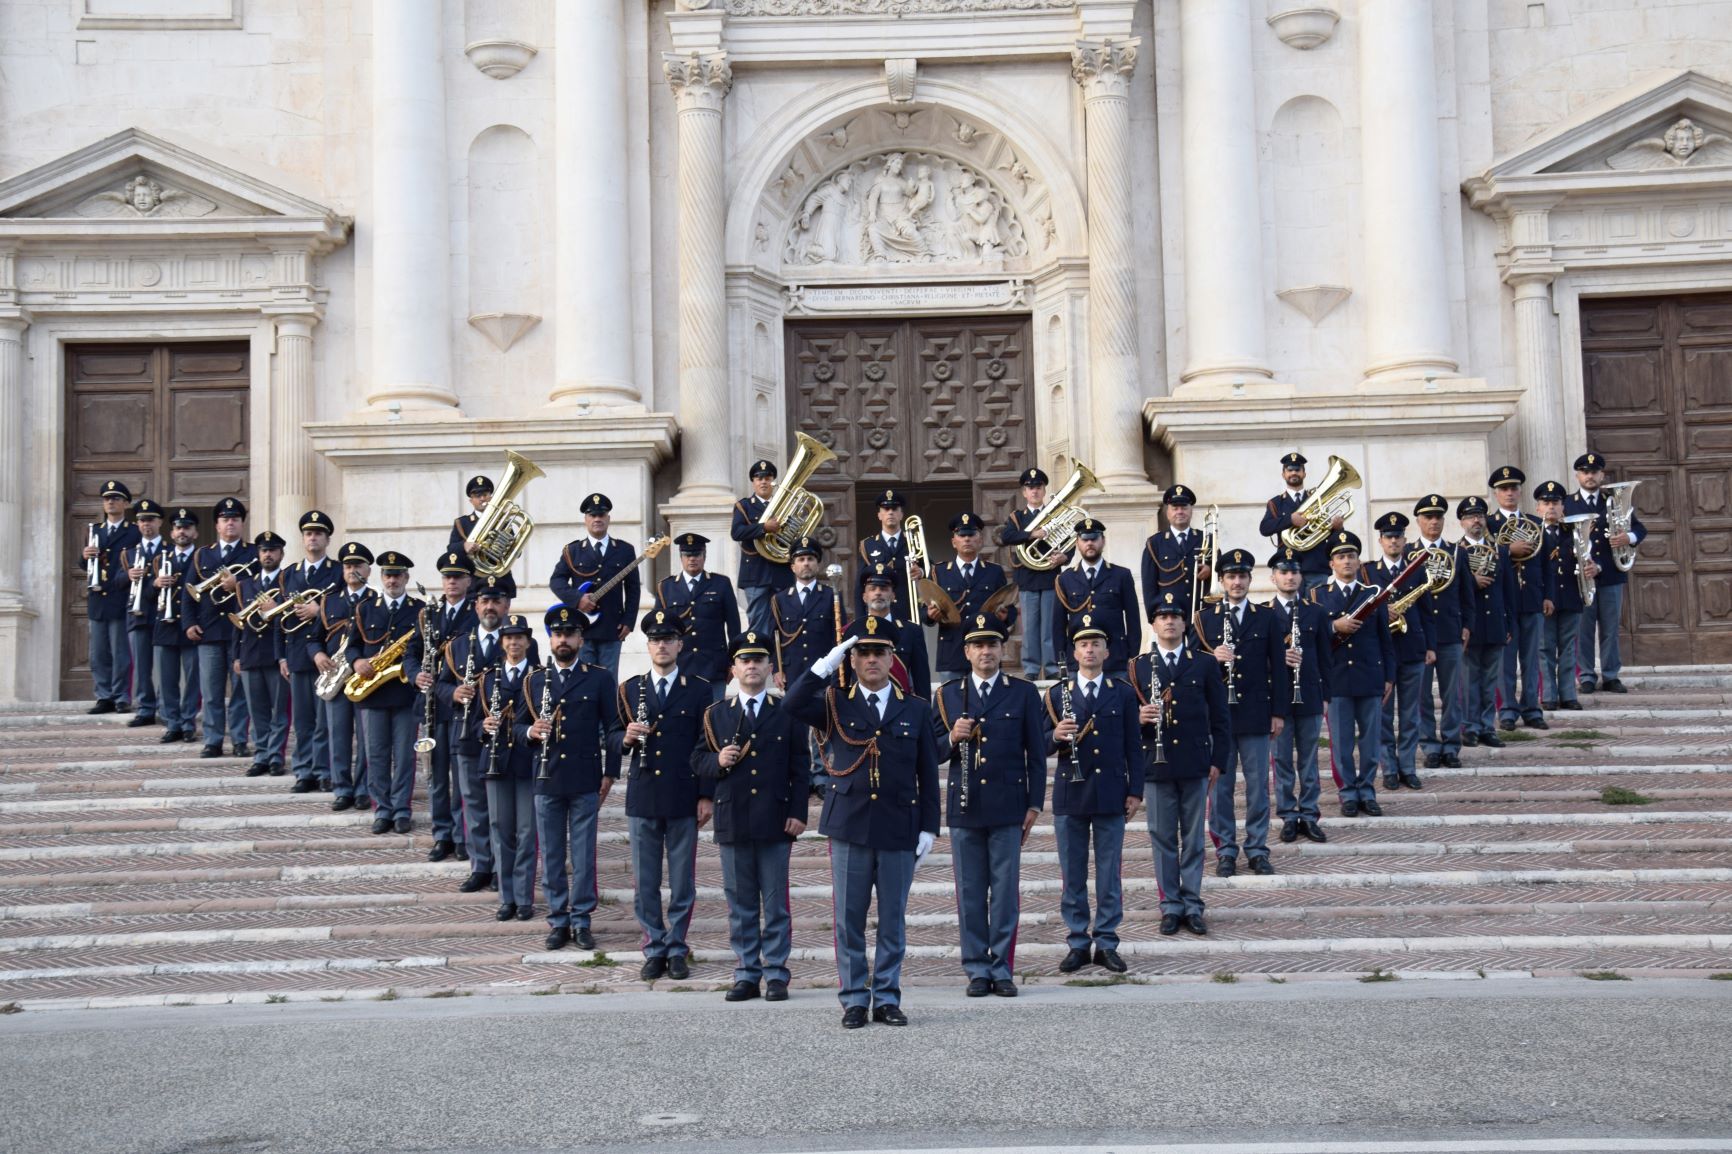 Domani 11 dicembre, con inizio alle ore 17.00, si terrà ad Arezzo un concerto della Fanfara della Polizia di Stato